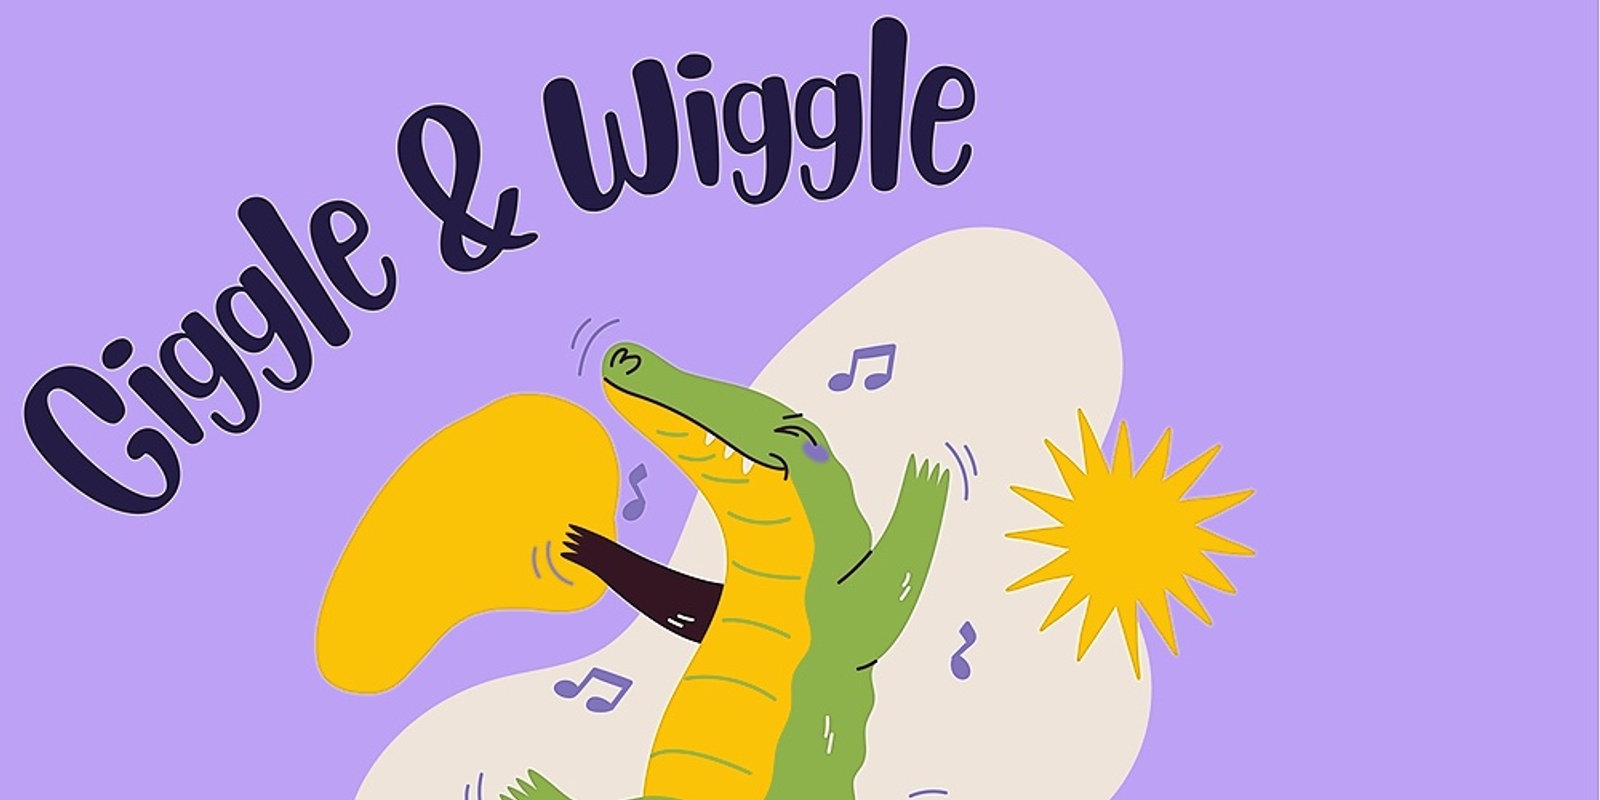 Giggle & Wiggle - Term 2, Wednesdays